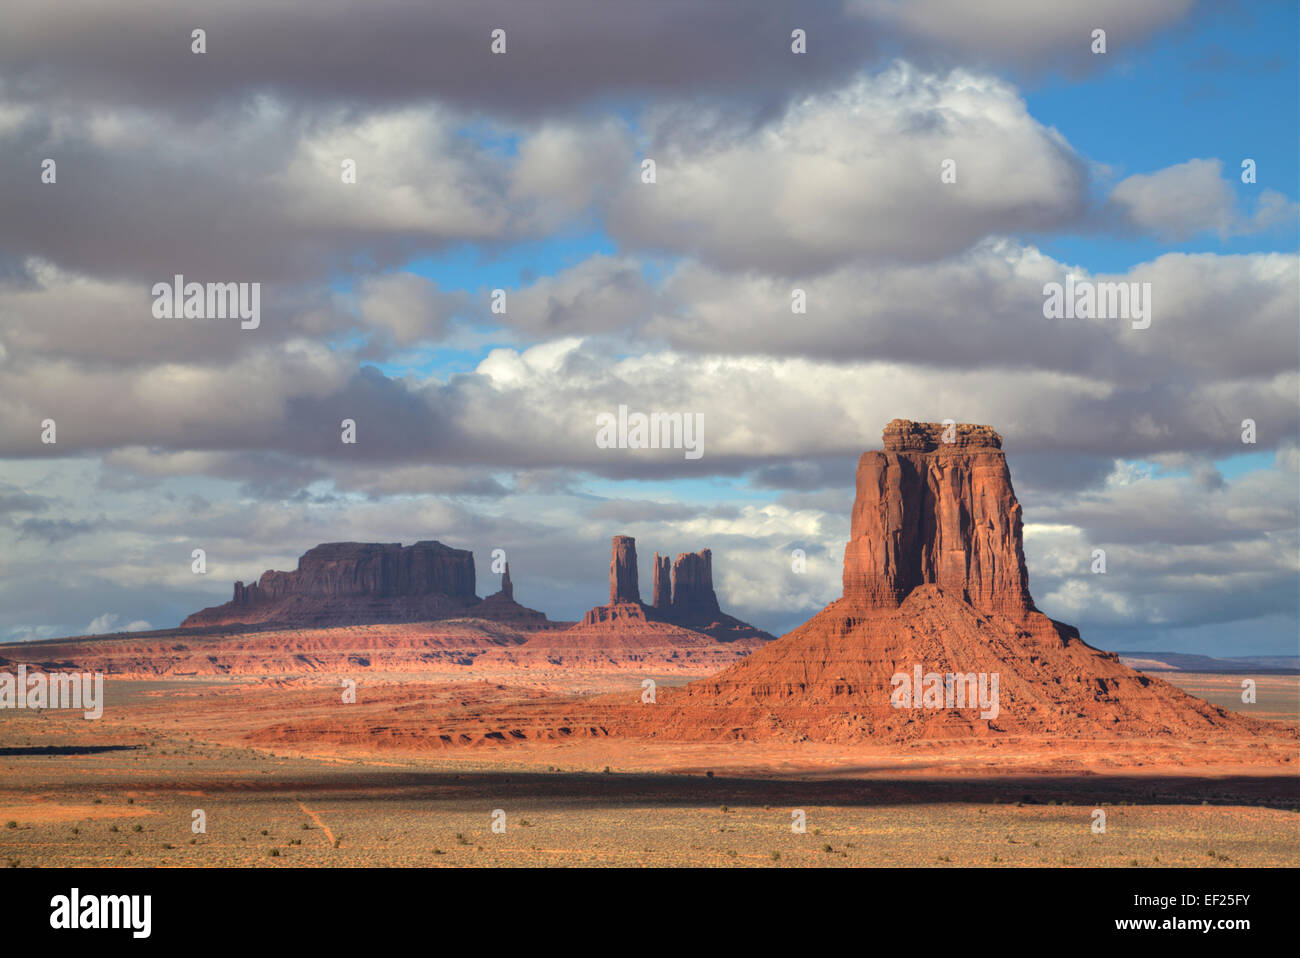 Aperçu de la fenêtre du nord donnent sur l'Est, Mitten Butte (premier plan), Monument Valley Navajo Tribal Park, Utah, USA Banque D'Images